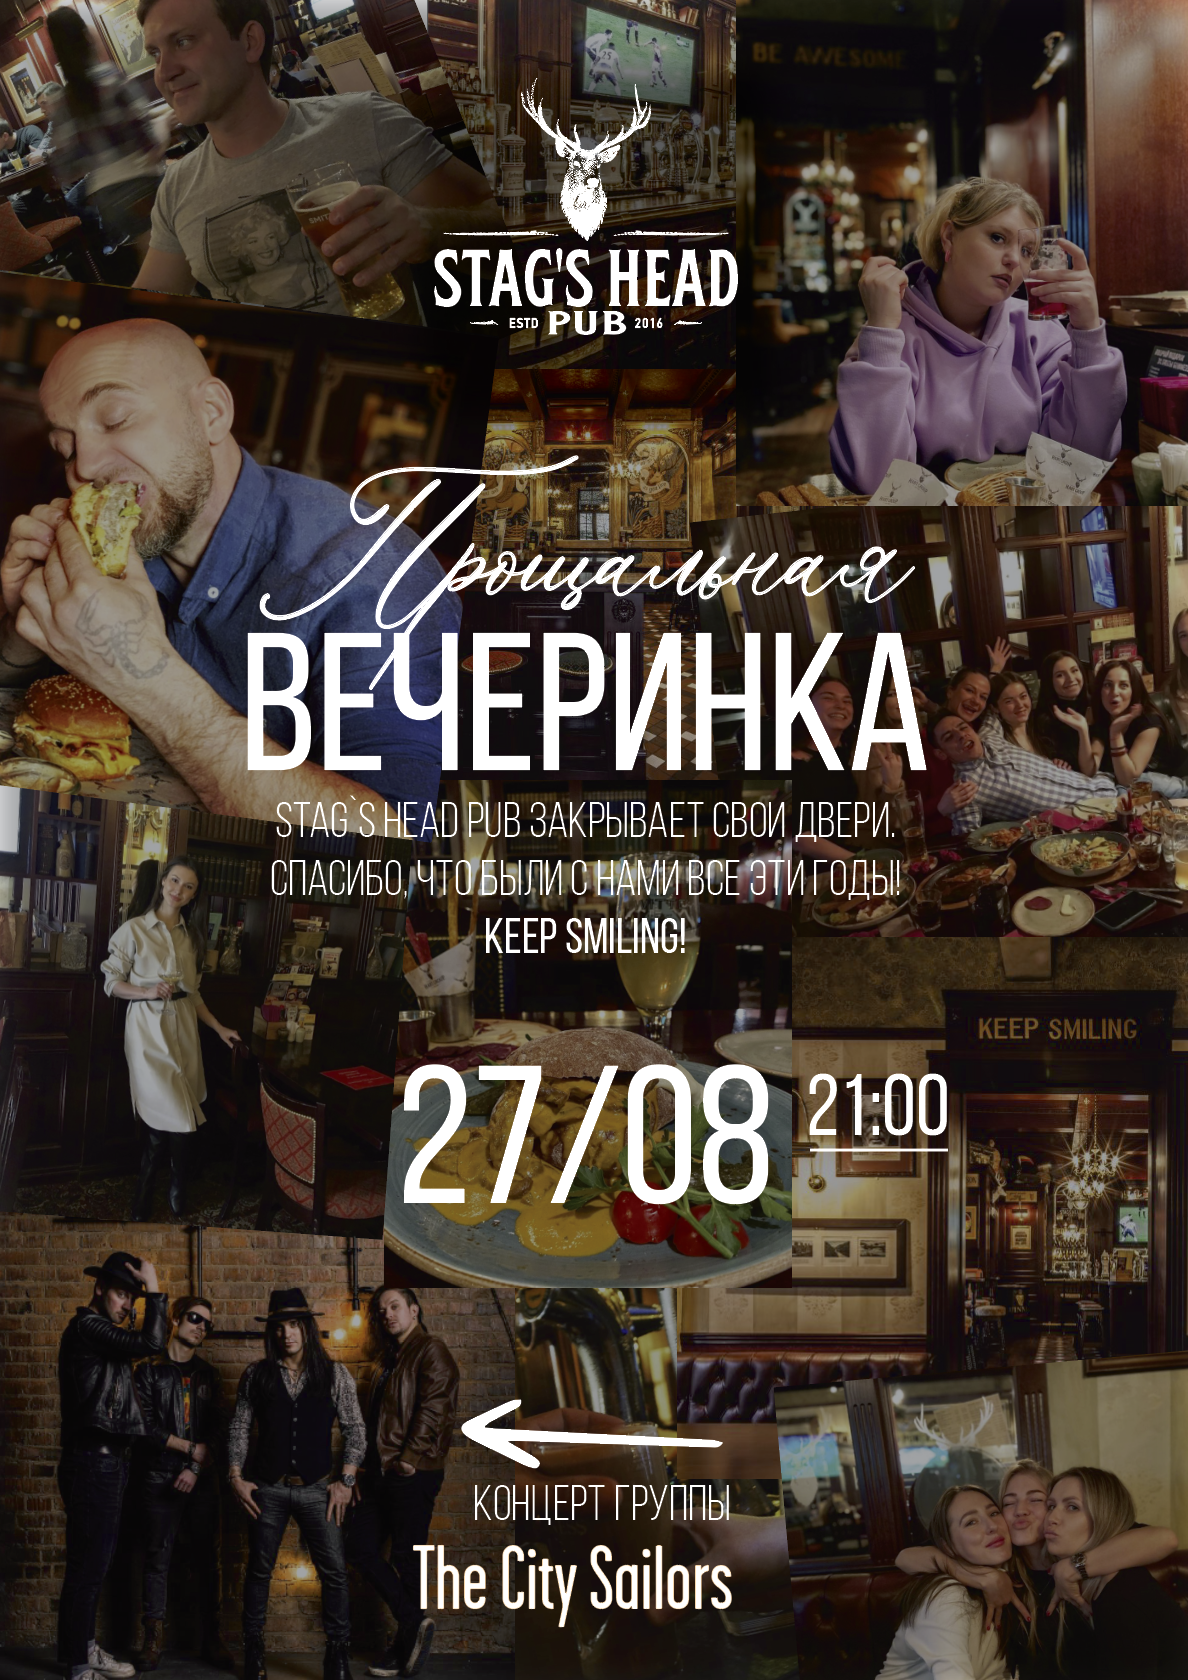 Прощальная Вечеринка в Stag’s Head Pub 27 августа!